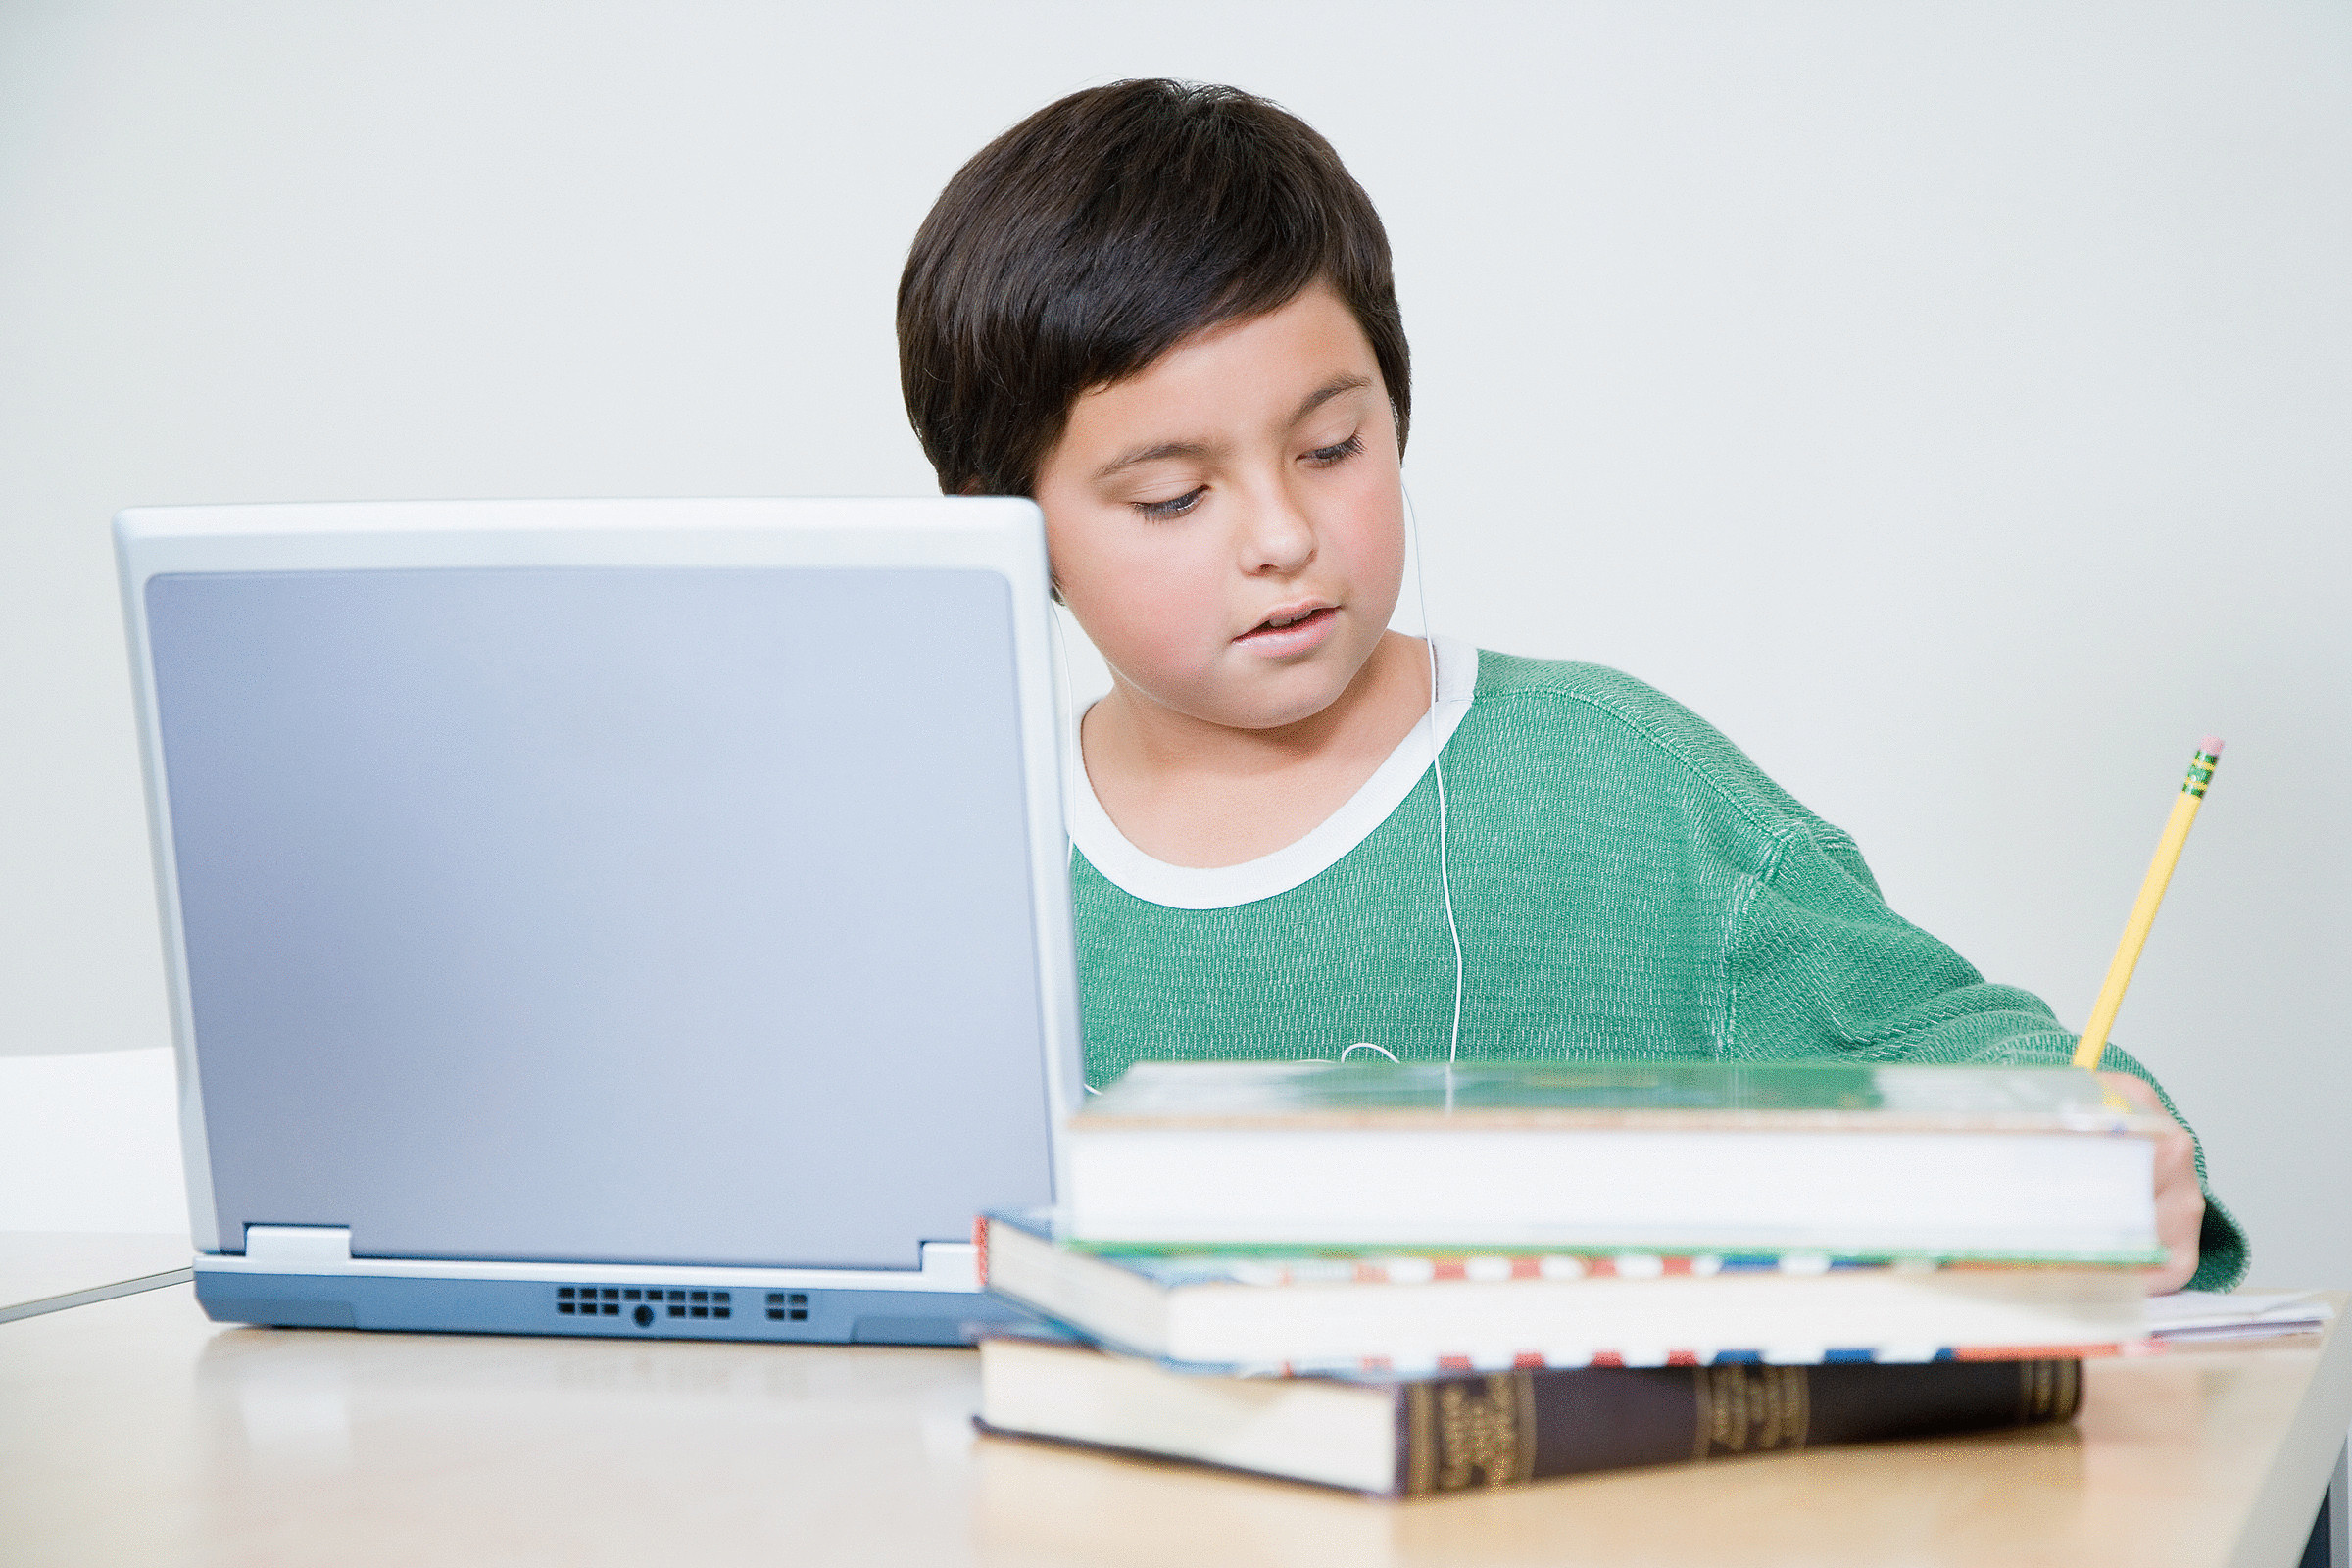 Интернет урок ученик. Компьютер для школьника. Ребенок за компьютером. Мальчик с компьютером. Школьник с ноутбуком.